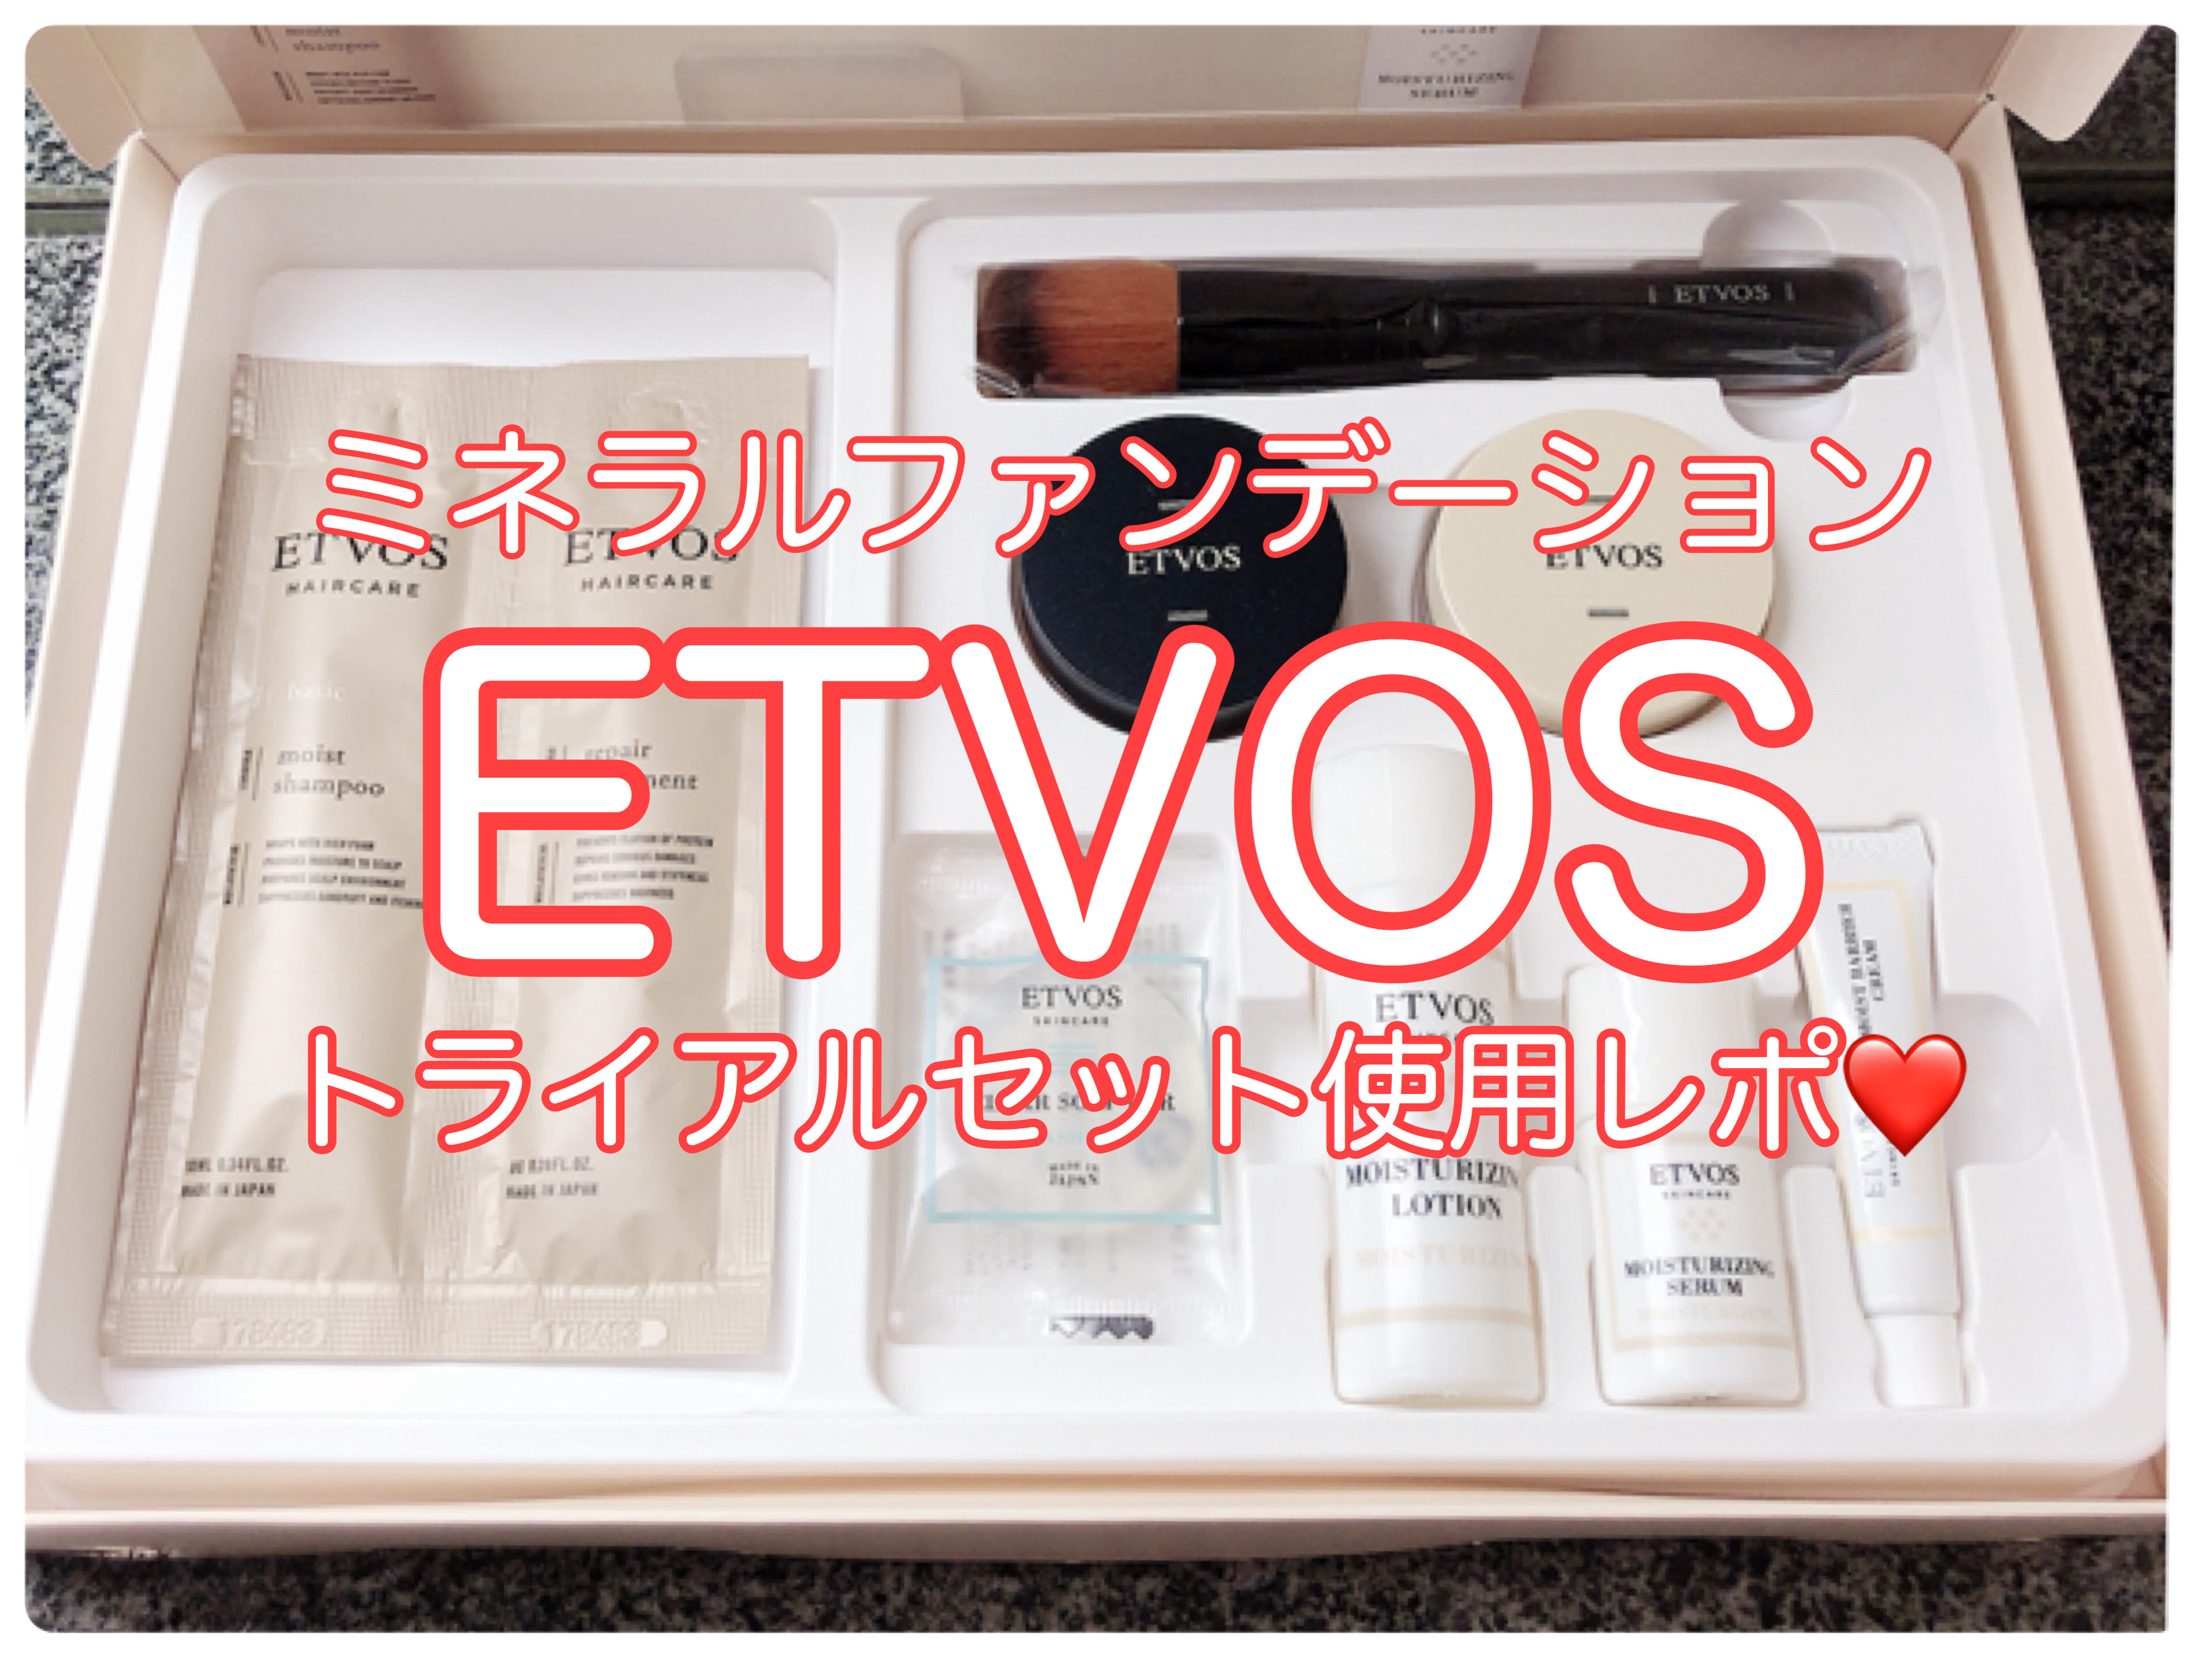 Etvos エトヴォス 美肌になりたいなら買わない理由がない ミネラルファンデーショントライアルセット オトナ女子olの可愛いを作る